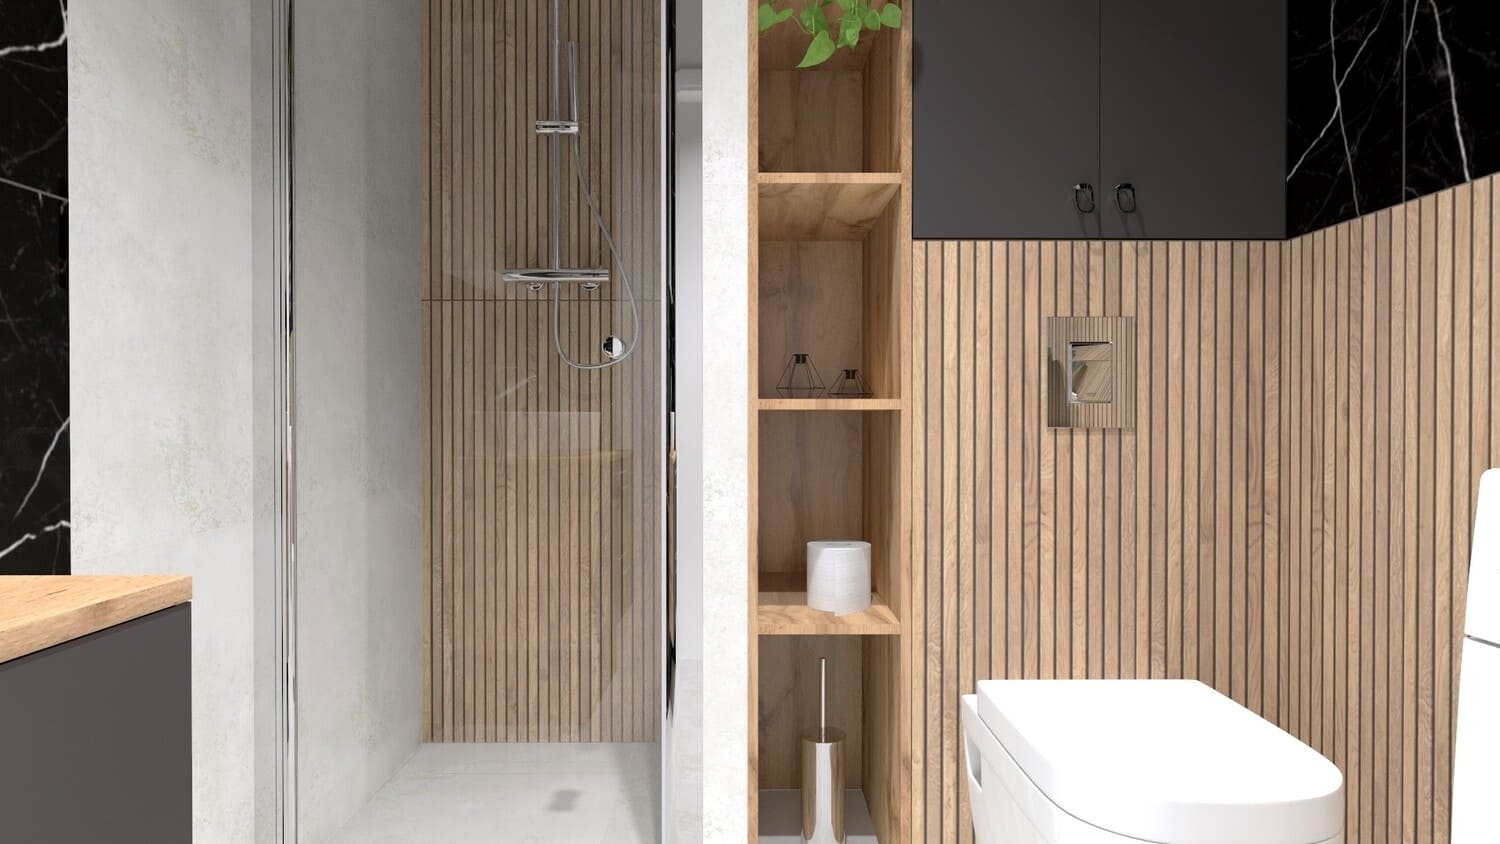 Projekt łazienki, lamele - wizualizacja. Łazienka z płytkami imitującymi drewniane lamele - prysznic i ubikacja.